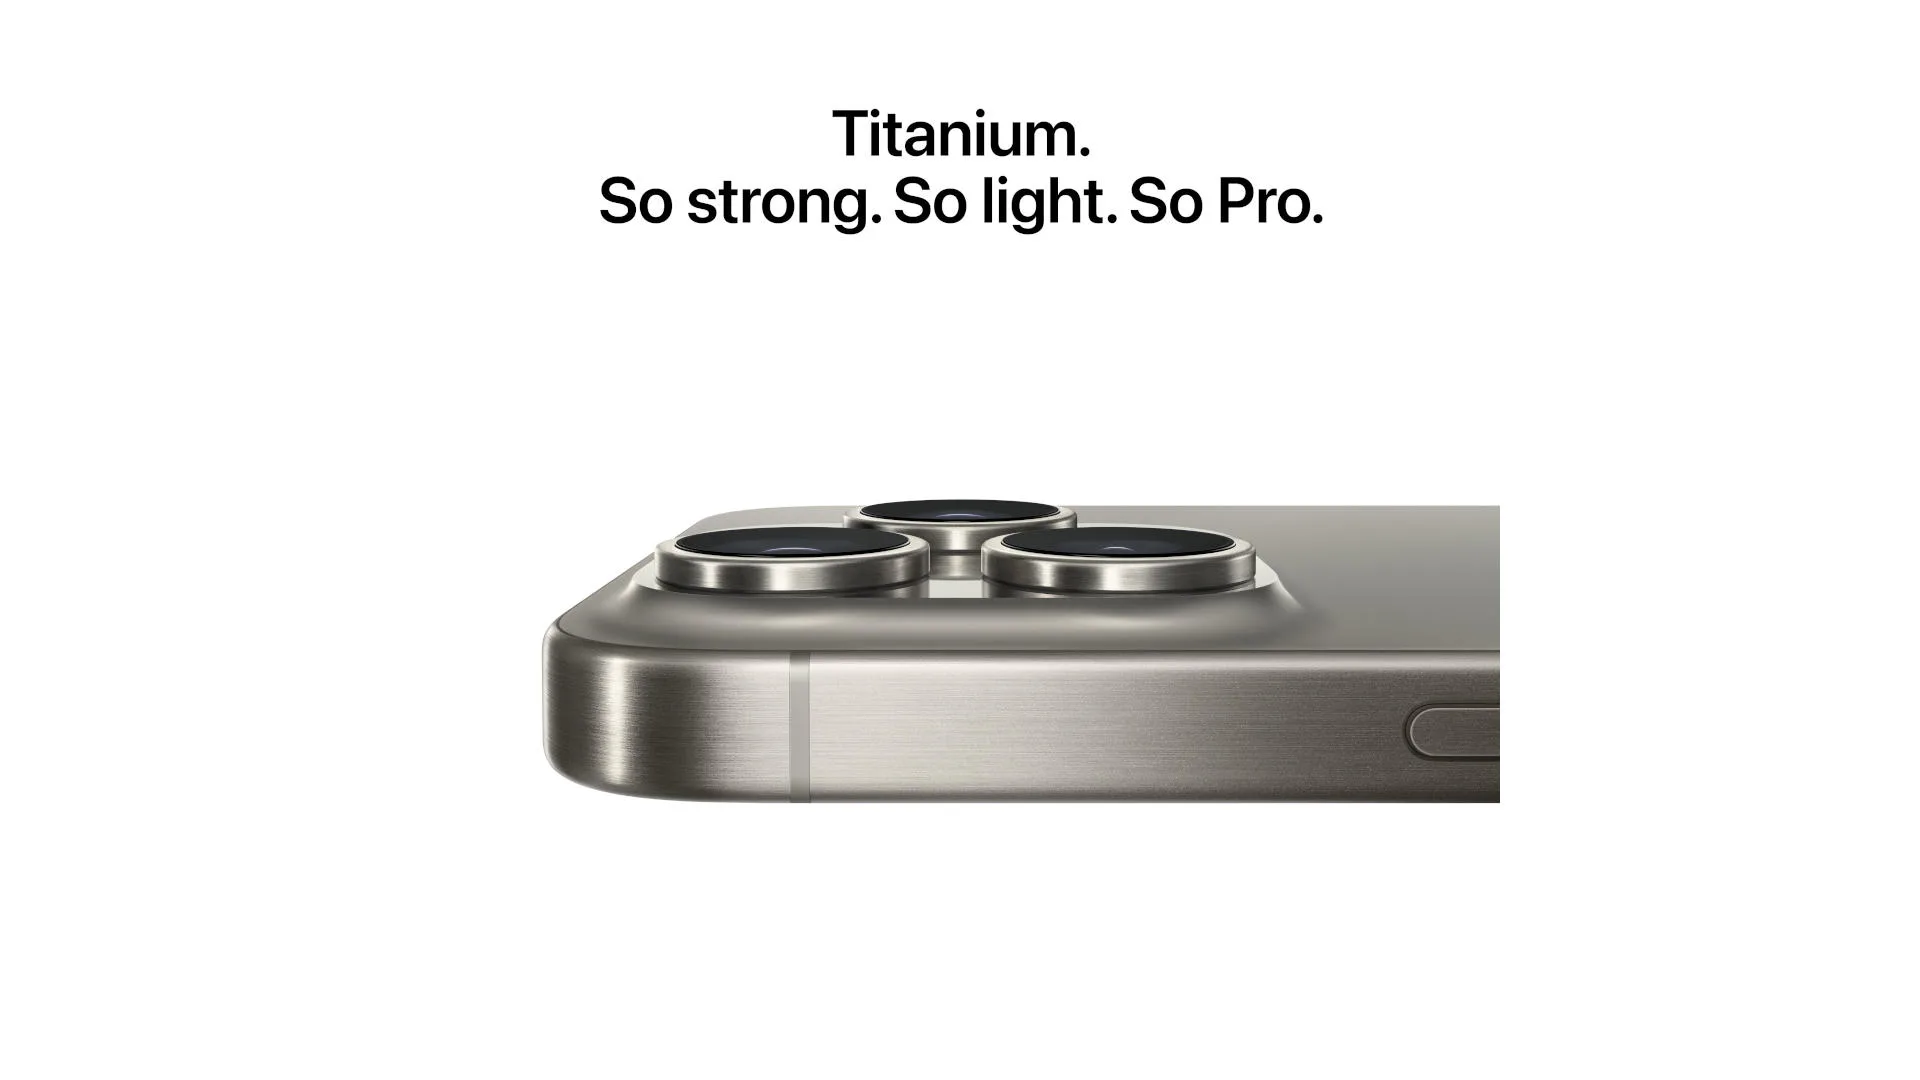 iPhone. Gesmeed uit titanium